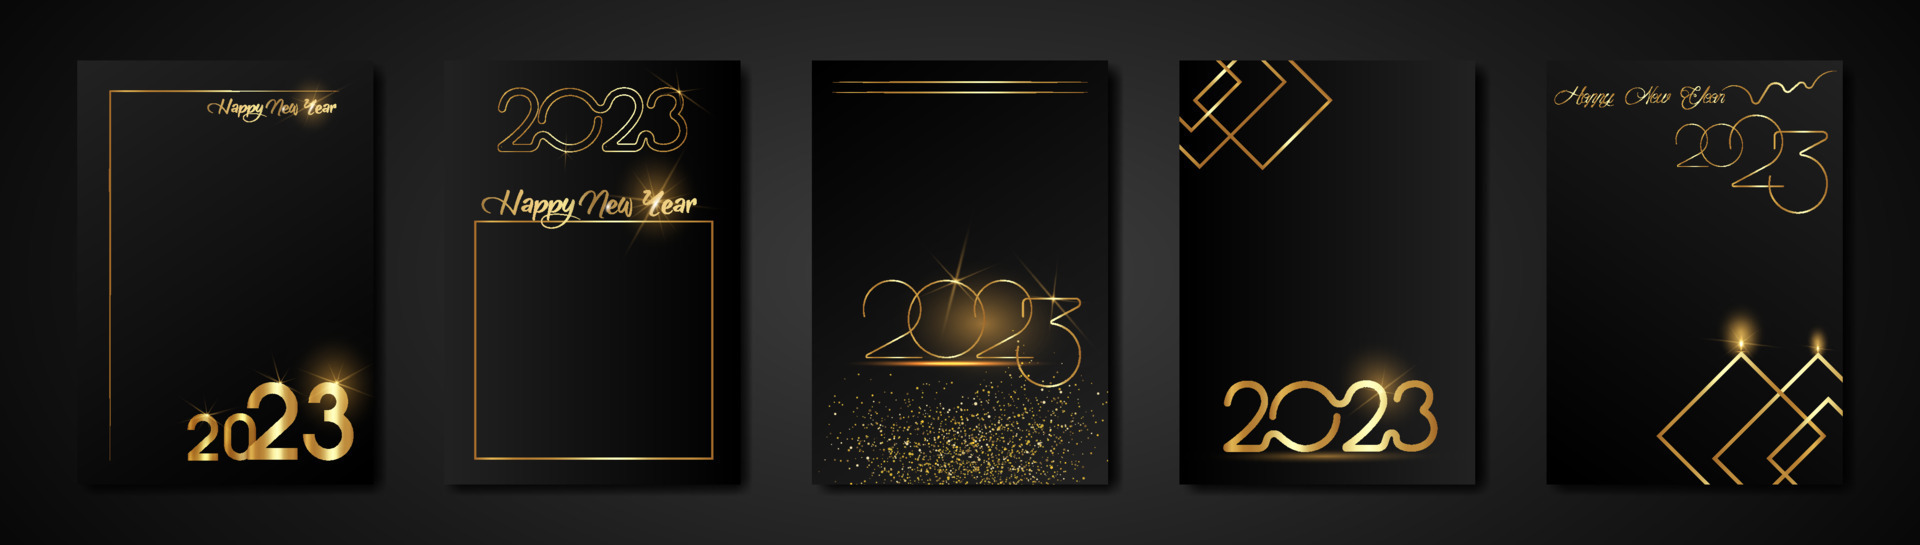 definir cartões 2023 feliz ano novo textura de ouro, fundo moderno preto  luxo dourado, elementos para calendário e cartão de saudações ou convites  de férias de inverno com tema de natal com